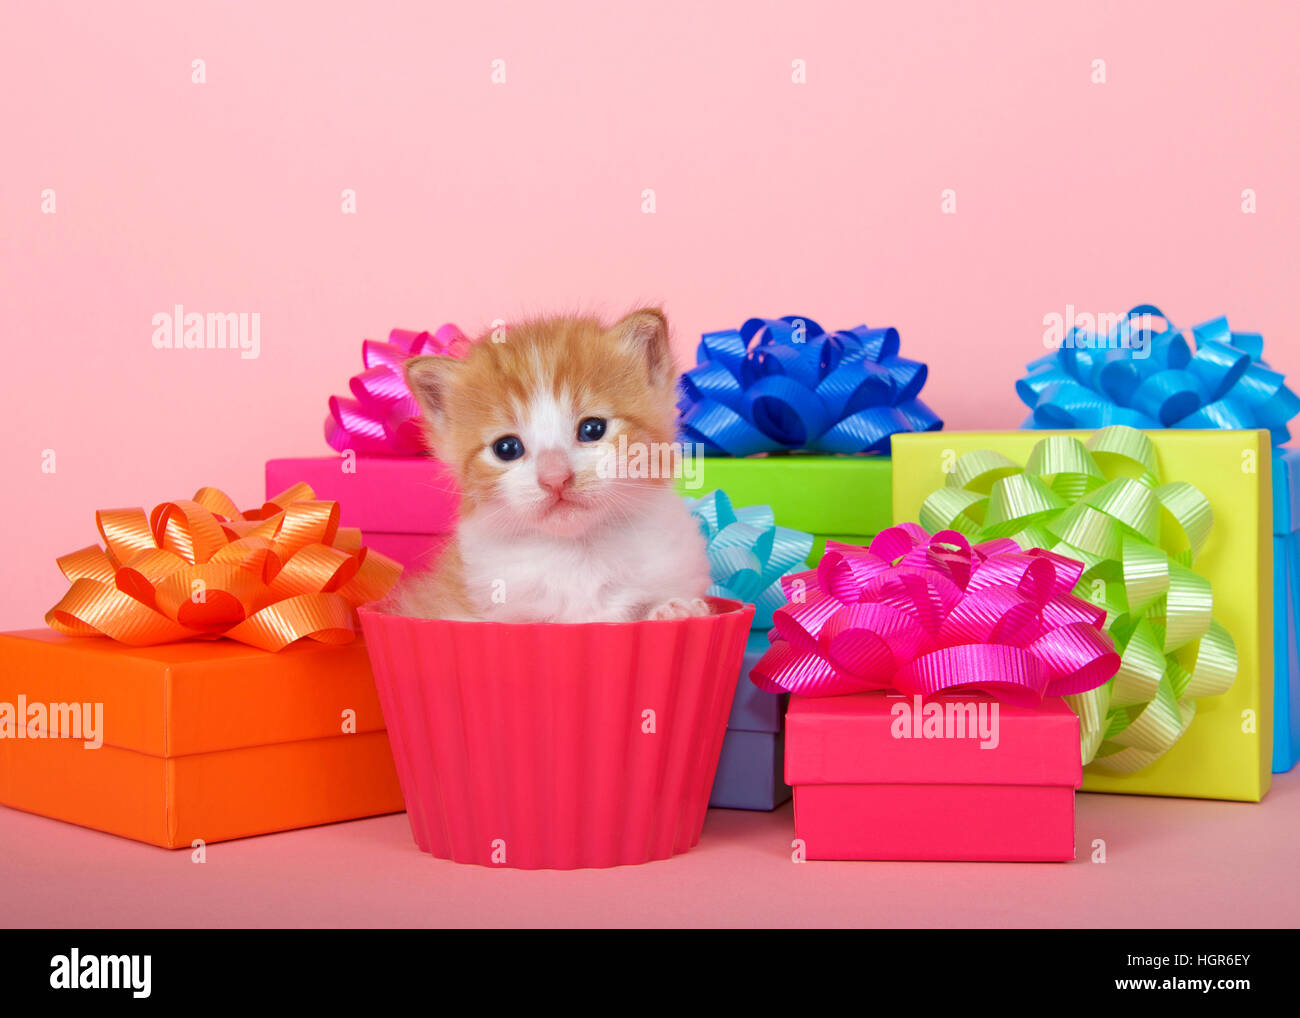 Orange et blanc tabby kitten dans un cup cake avec des boîtes d'anniversaire avec des arcs sur fond rose. Copier l'espace. Banque D'Images